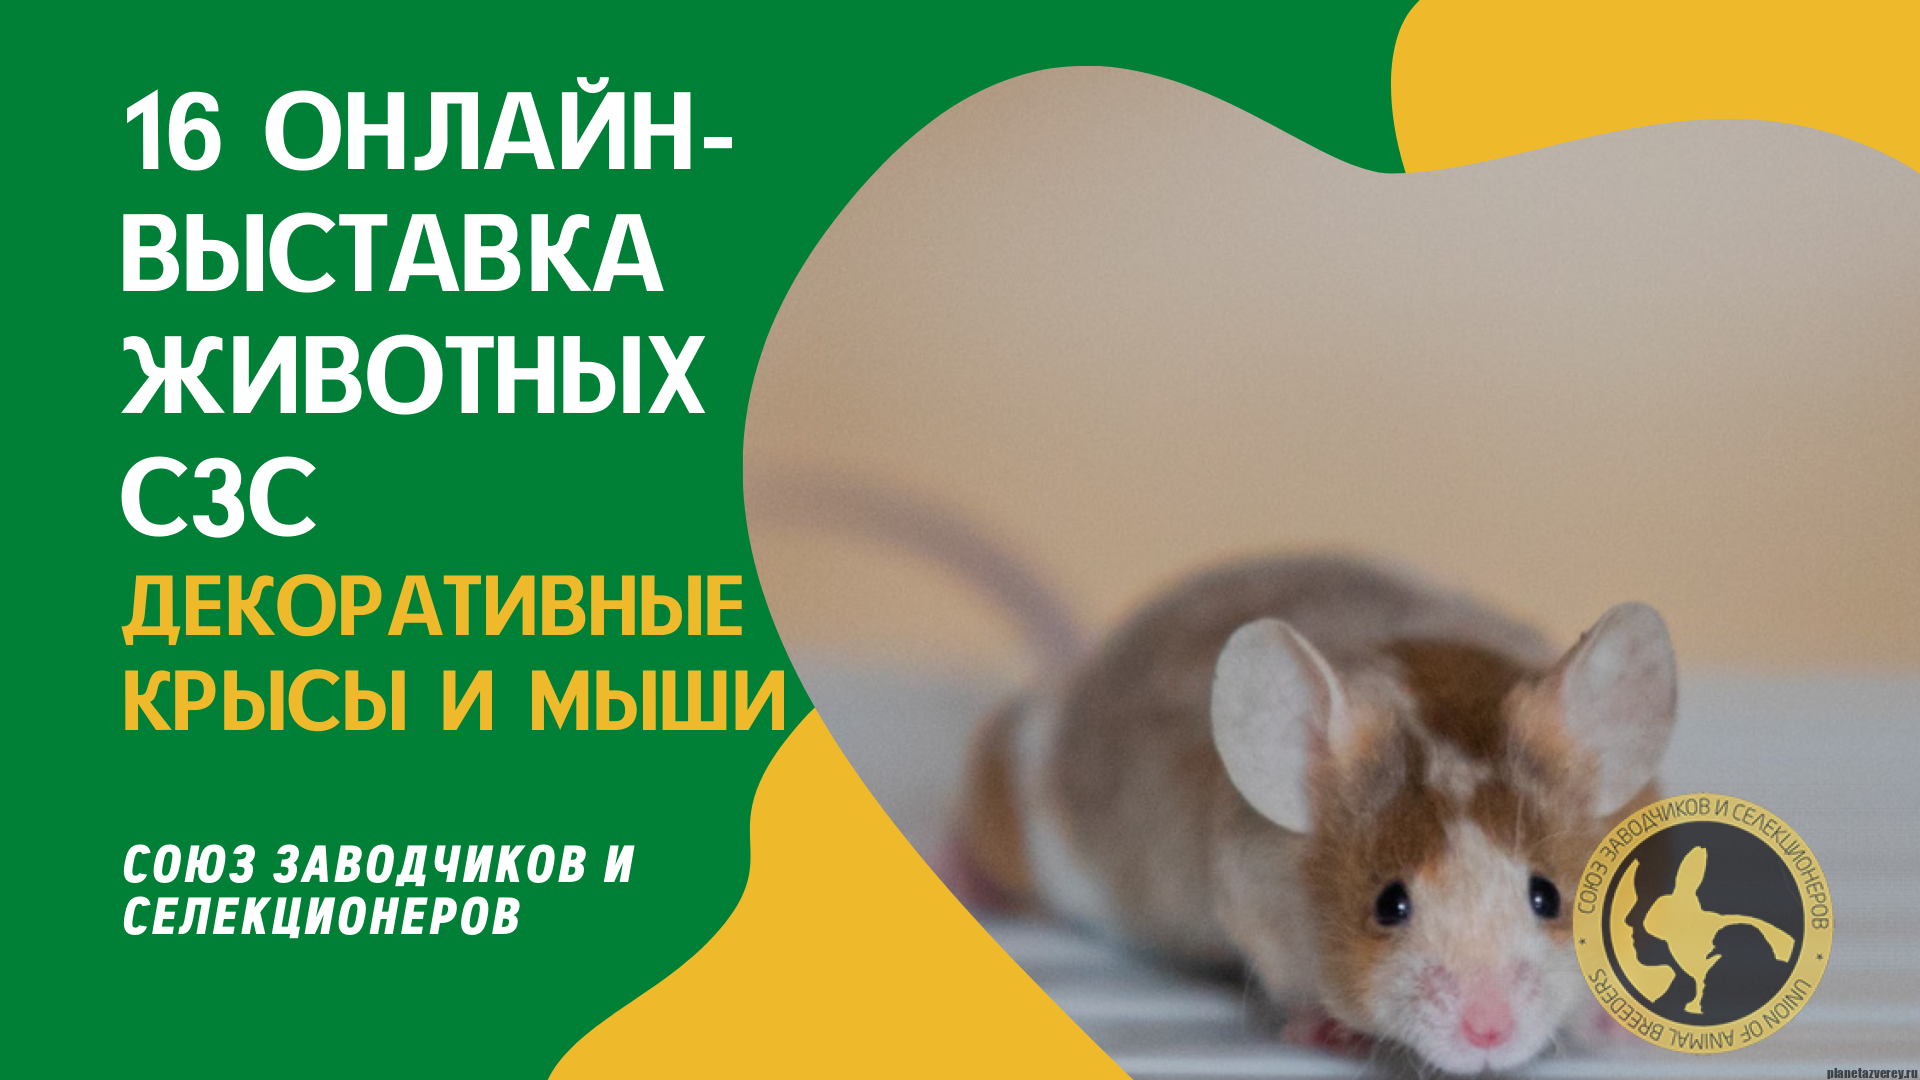 Крыса декоративная голая (Rattus norvegicus f. domesticus) купить за руб. — ZOOMIX